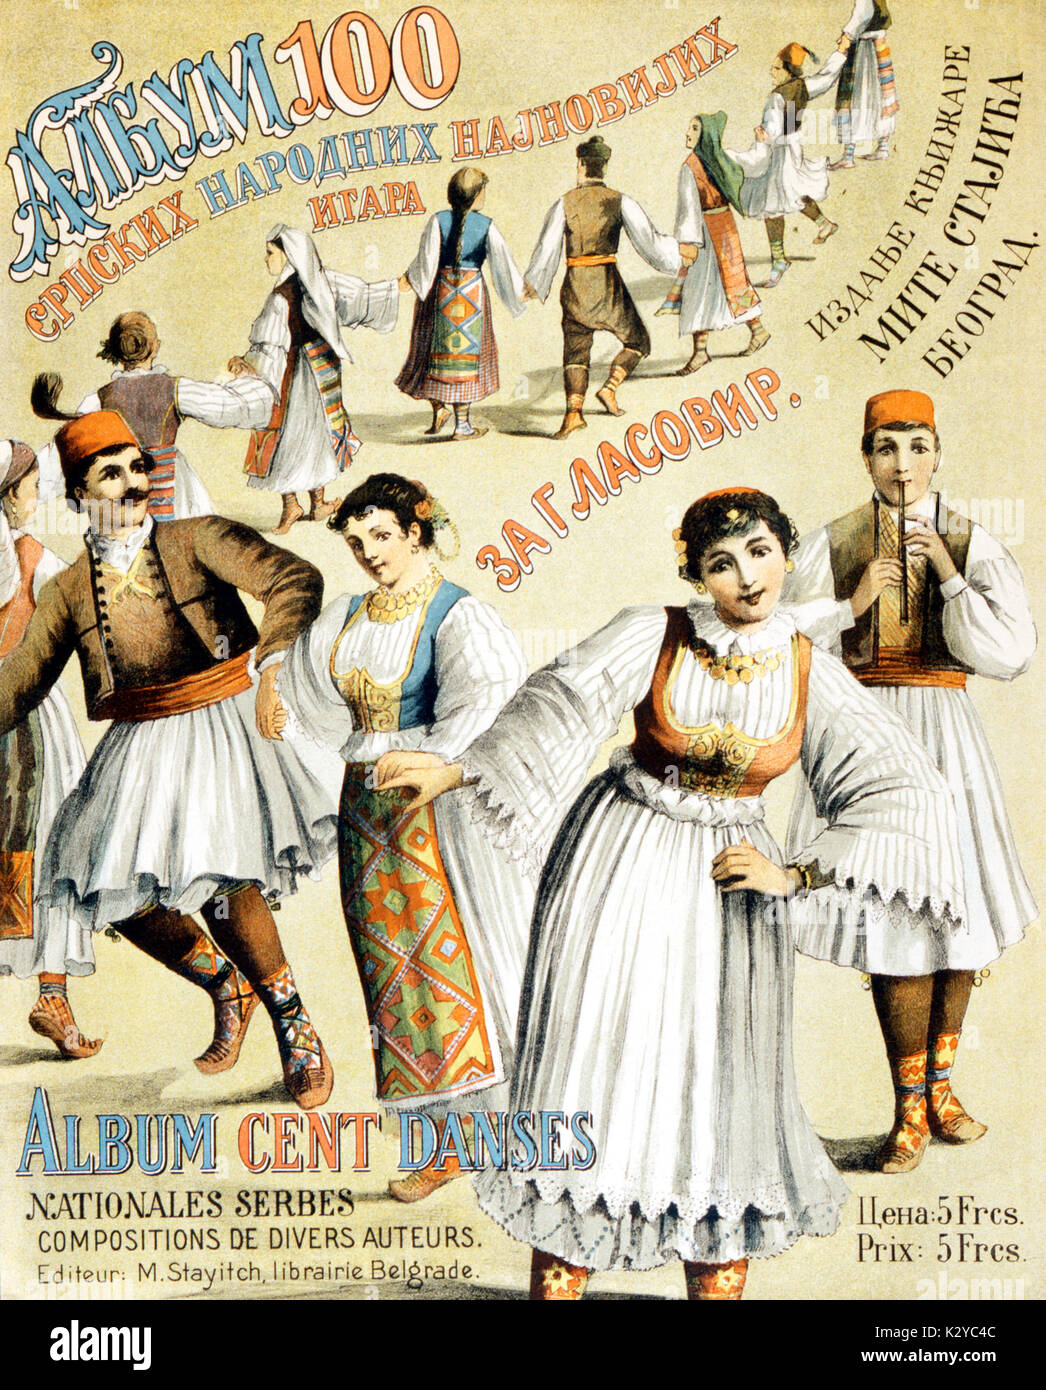 100 - danse danses nationales serbes, c.1900 avant de partition de piano. (Lire la plus récente) Banque D'Images